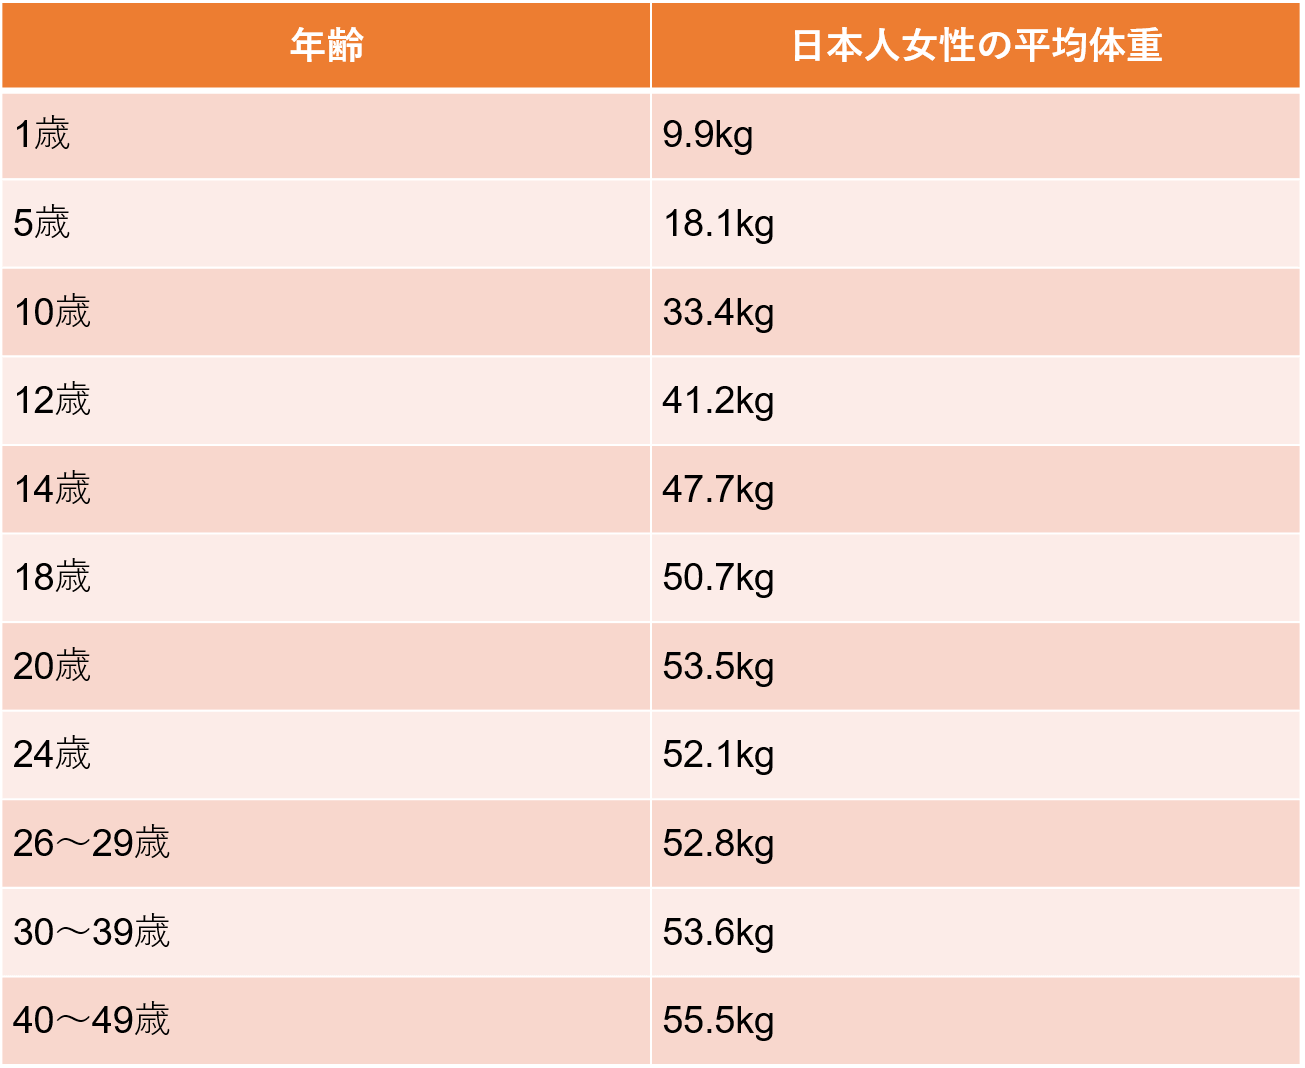 日本人女性の平均体重